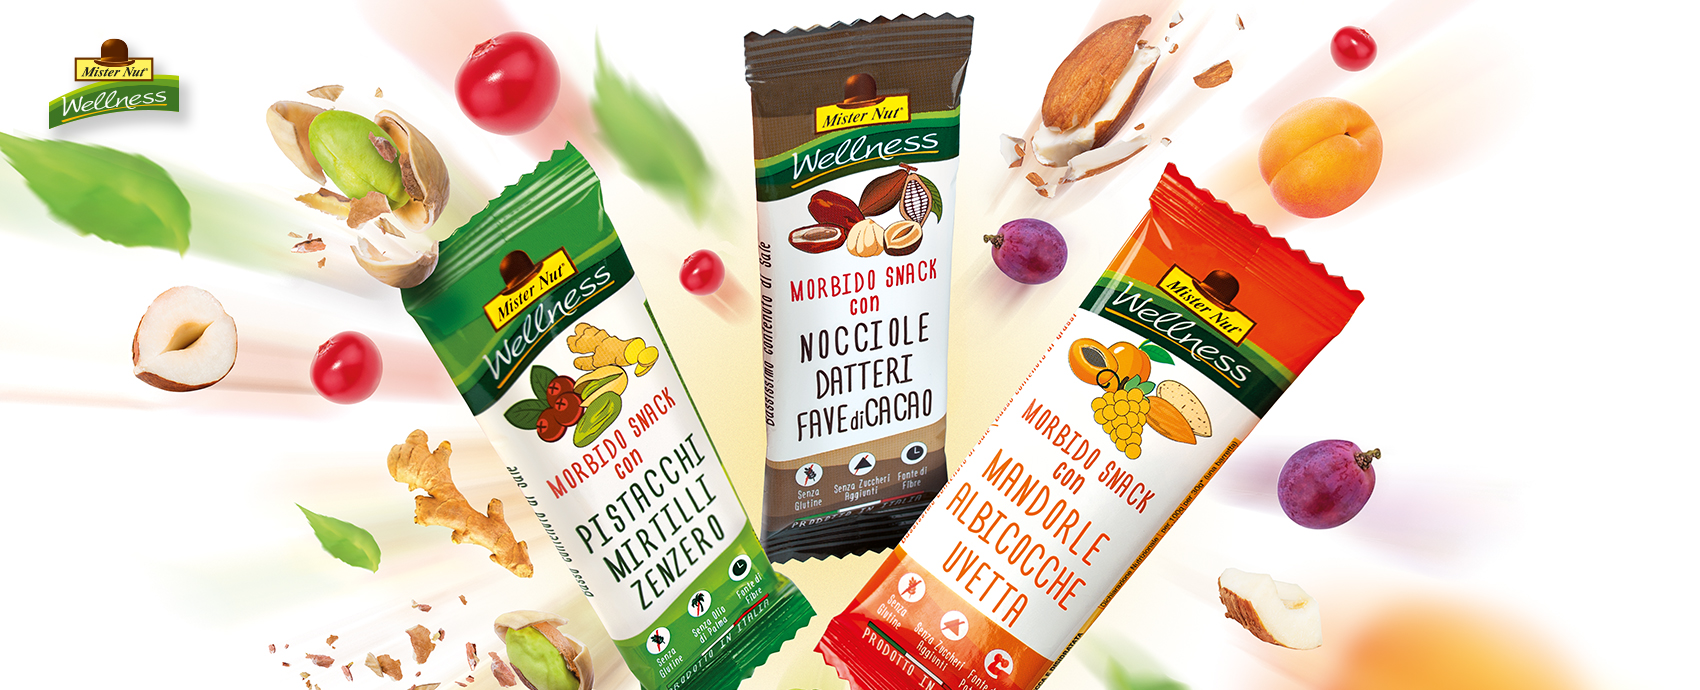 New Factor sceglie Expansion Group per il lancio degli snack Mister Nut Wellness.